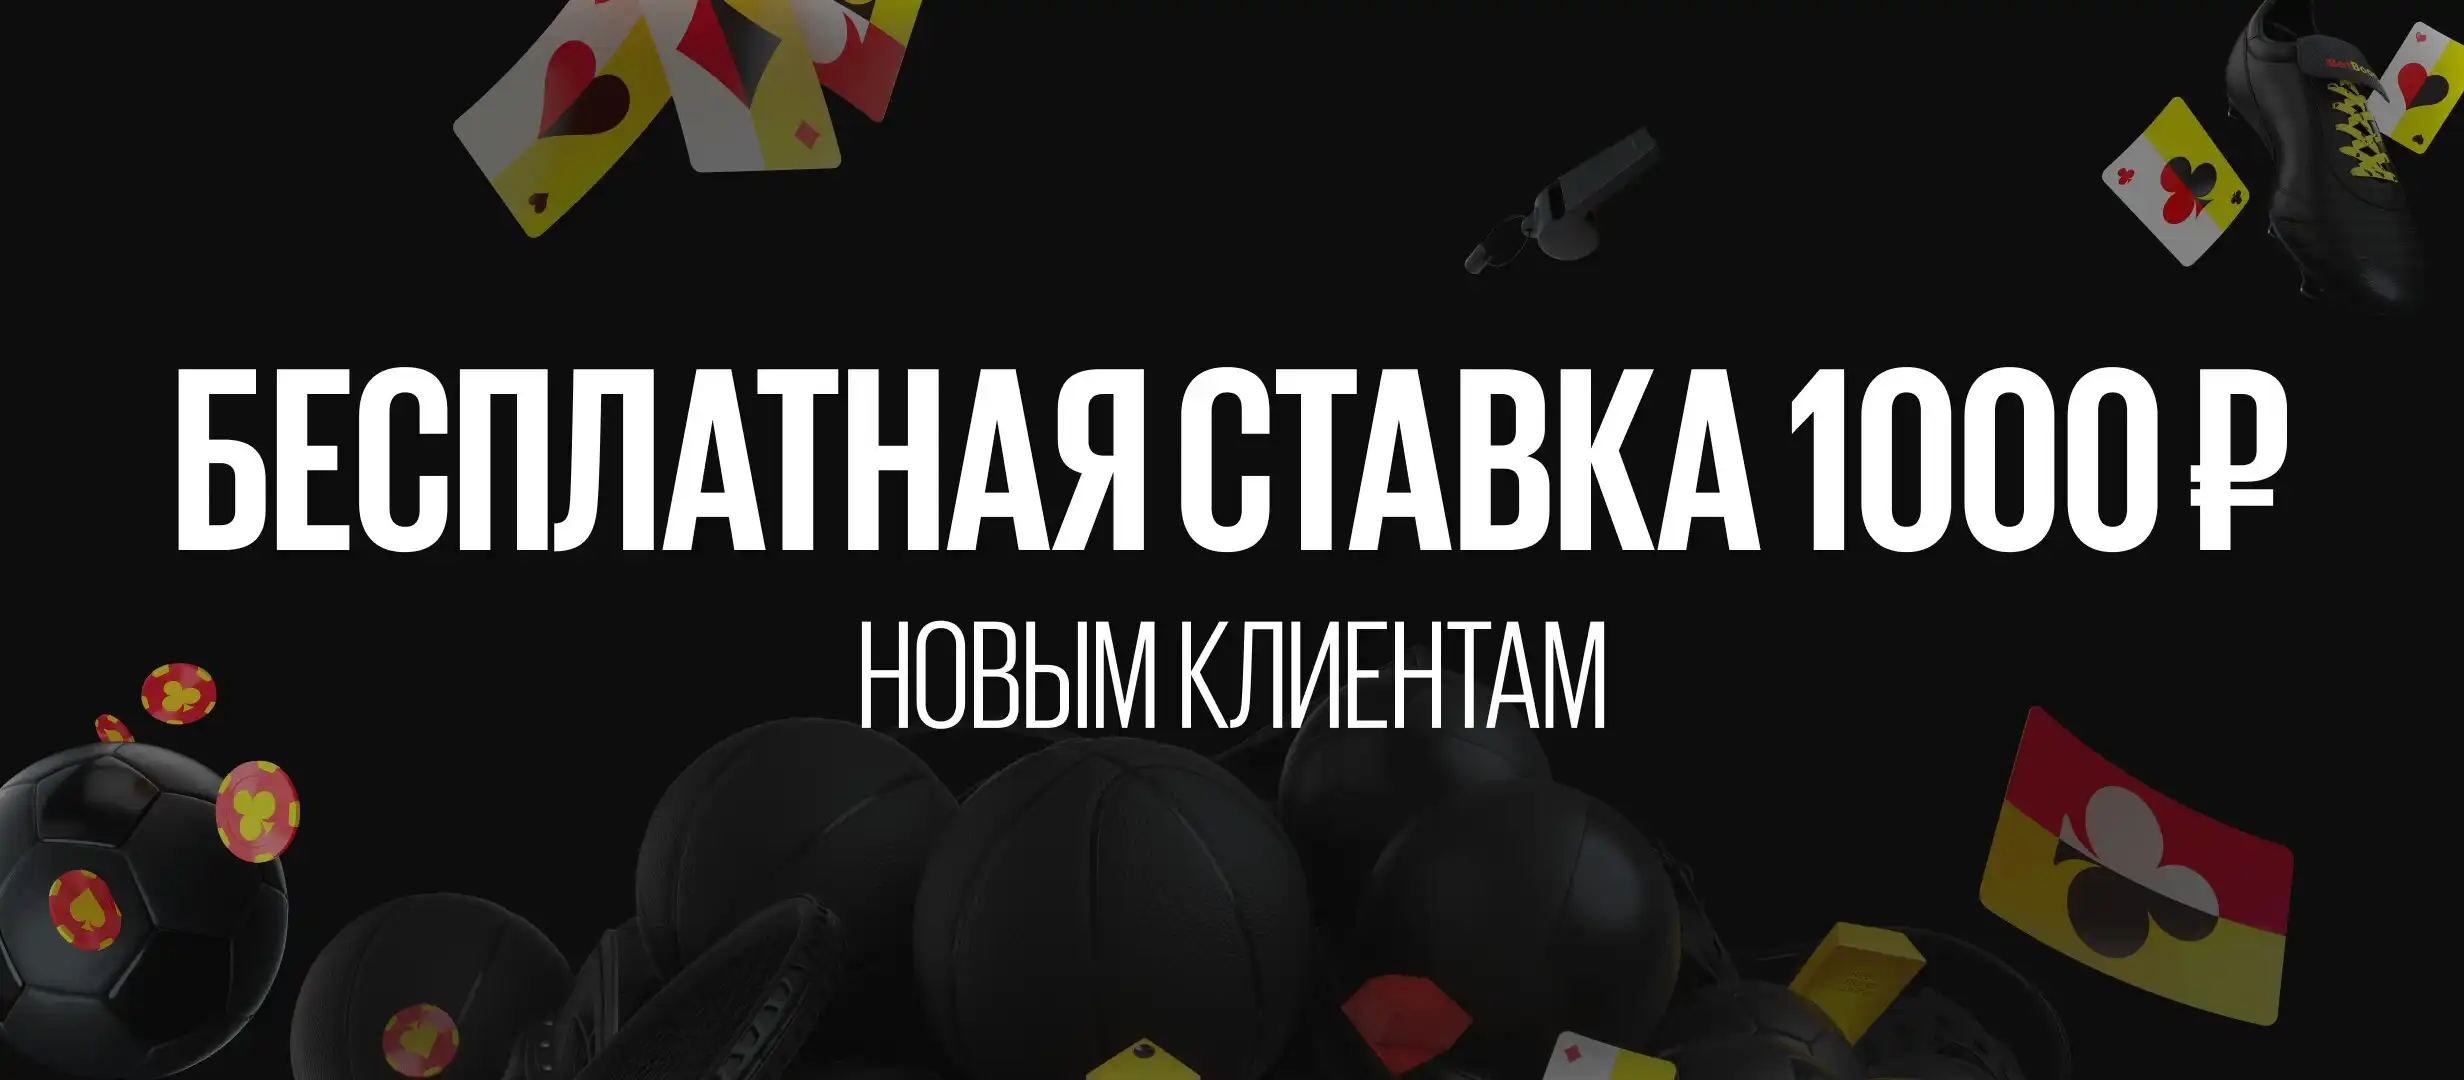 BetBoom предлагает фрибет на 1000 рублей